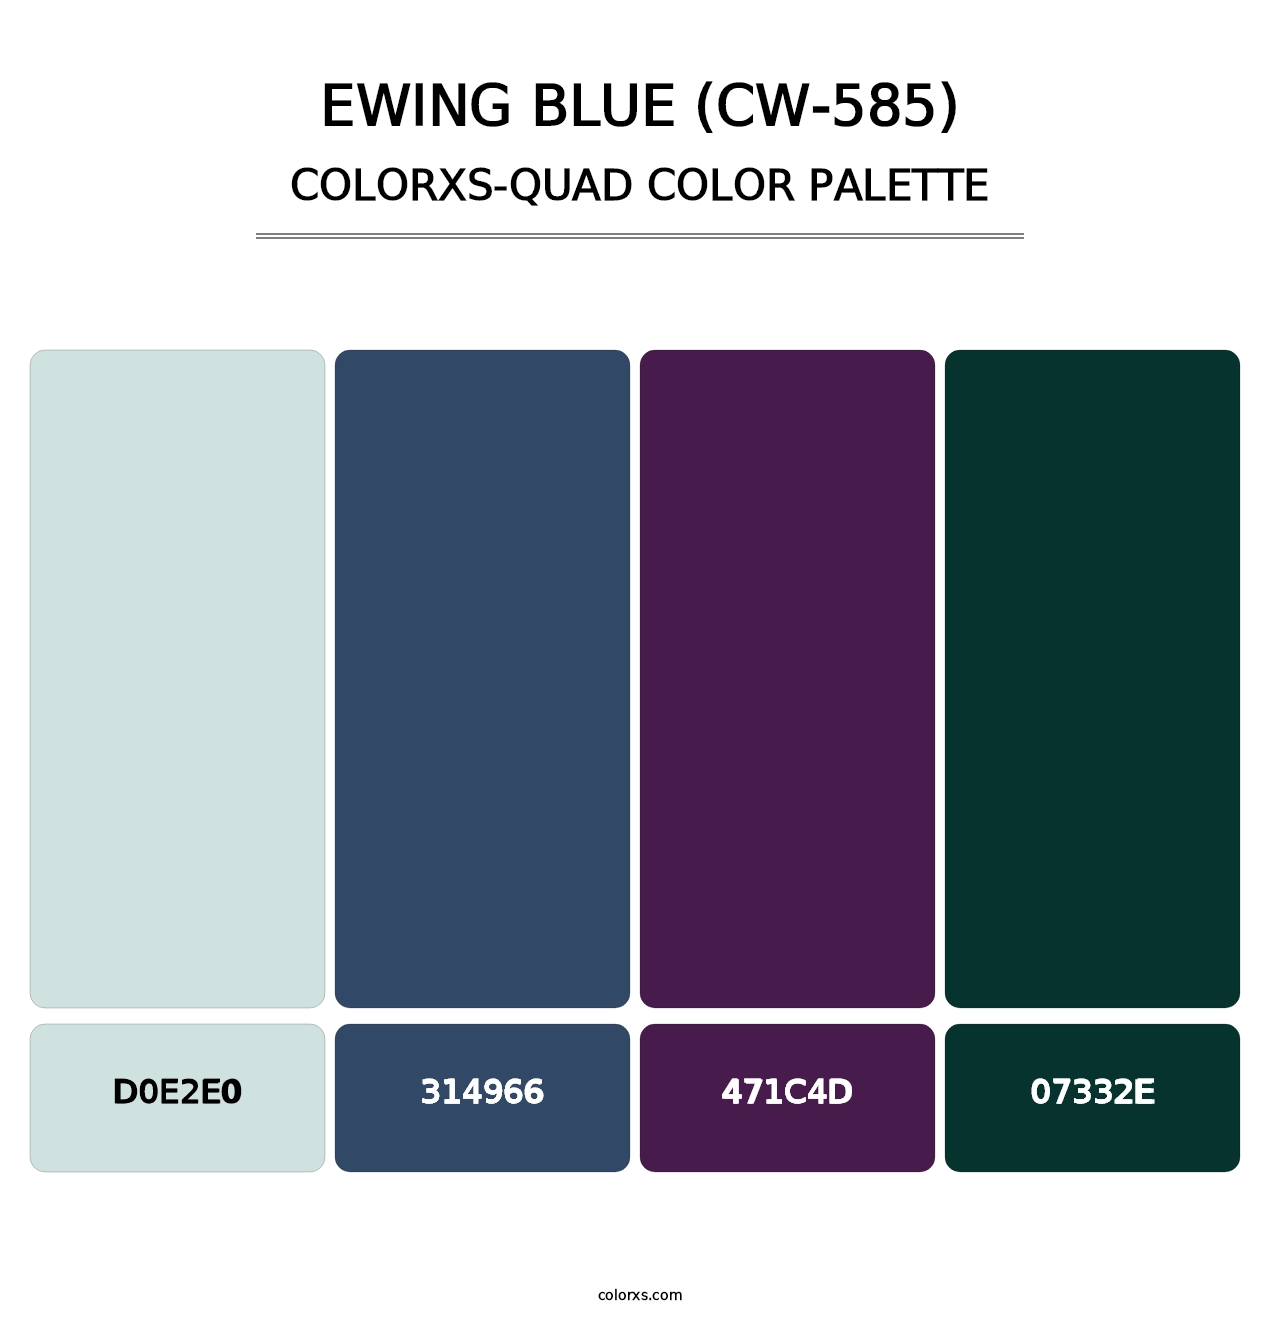 Ewing Blue (CW-585) - Colorxs Quad Palette